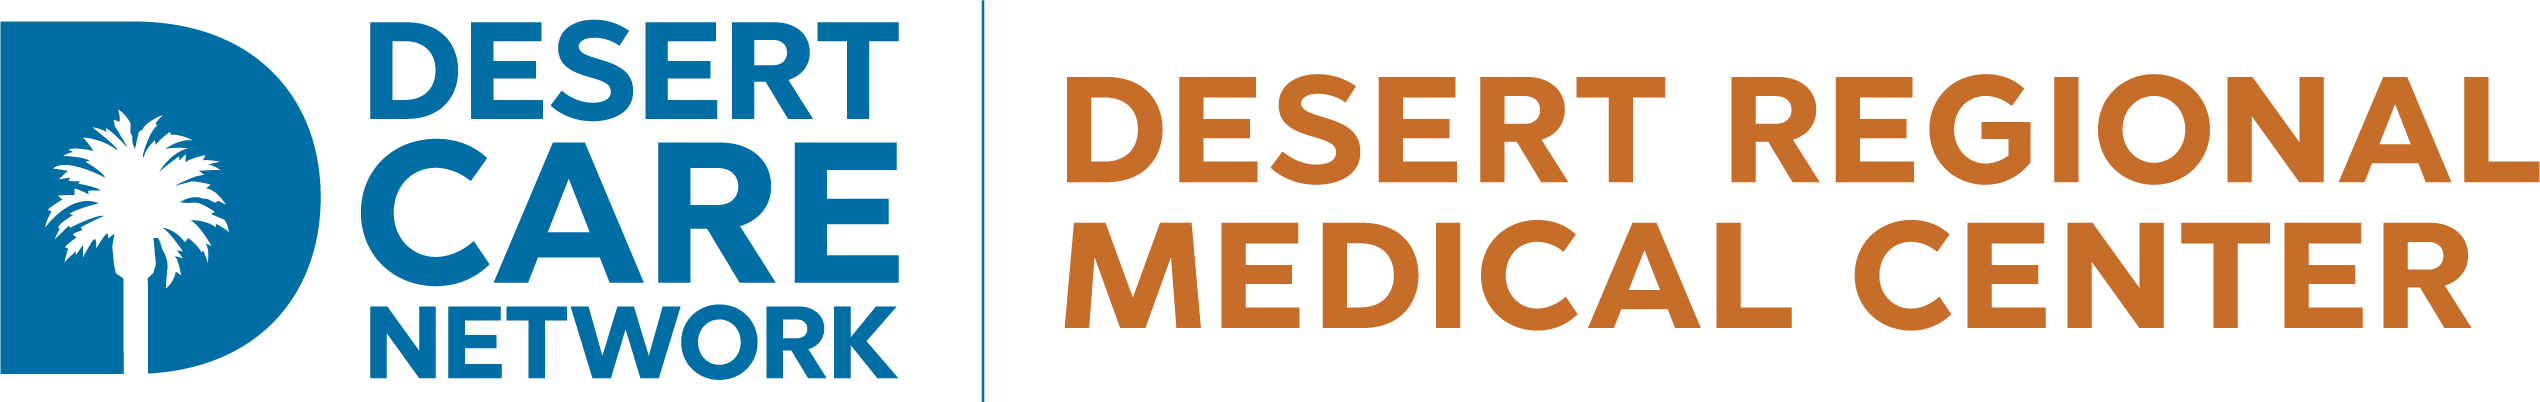 desert-care-network-logo 